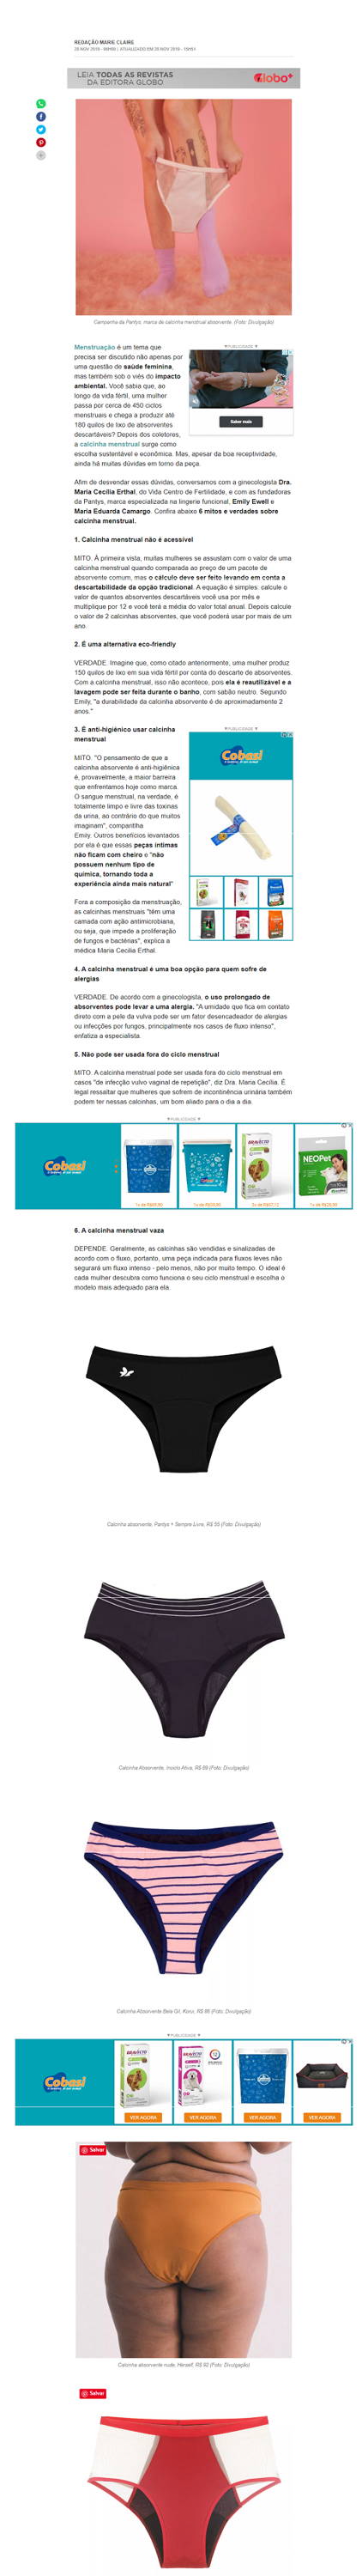 imagem da página do site Marie Claire com informações úteis sobre menstruação, mitos e verdades sobre o uso de calcinha absorvente